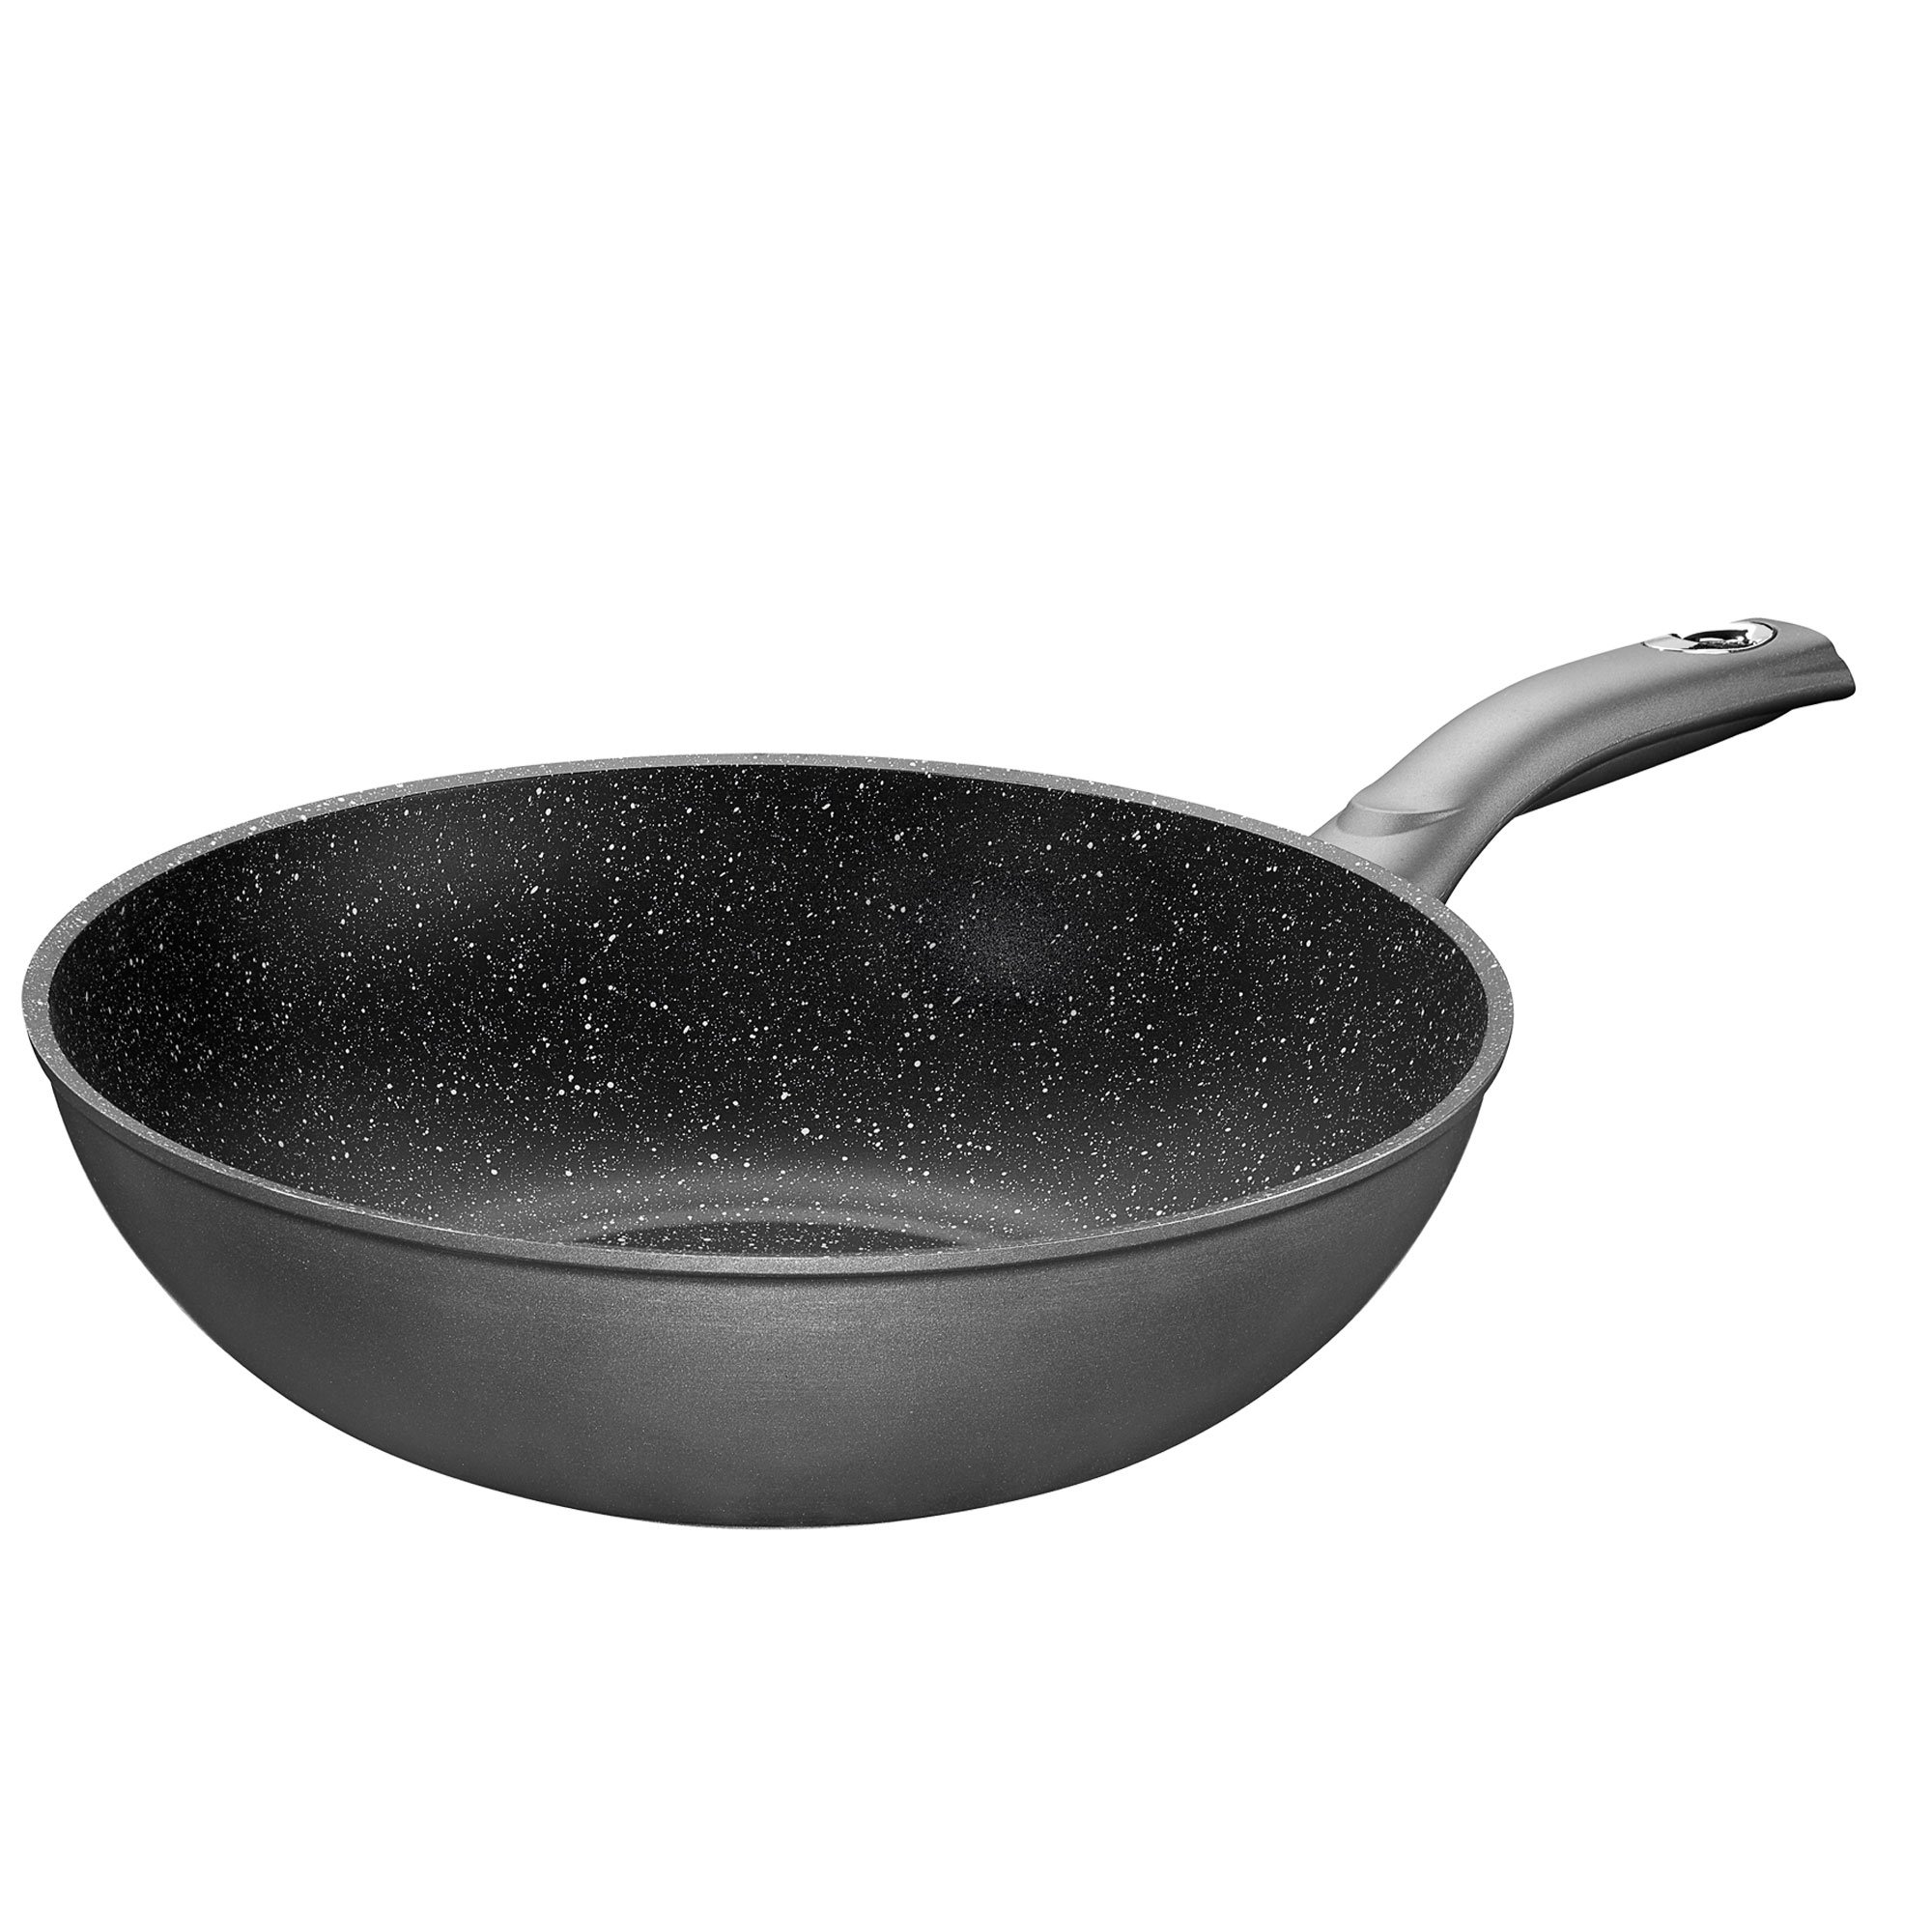 Padella wok STONELINE® Gourmundo 30 cm, Made in Germany, wok con rivestimento antiaderente, adatto all'induzione